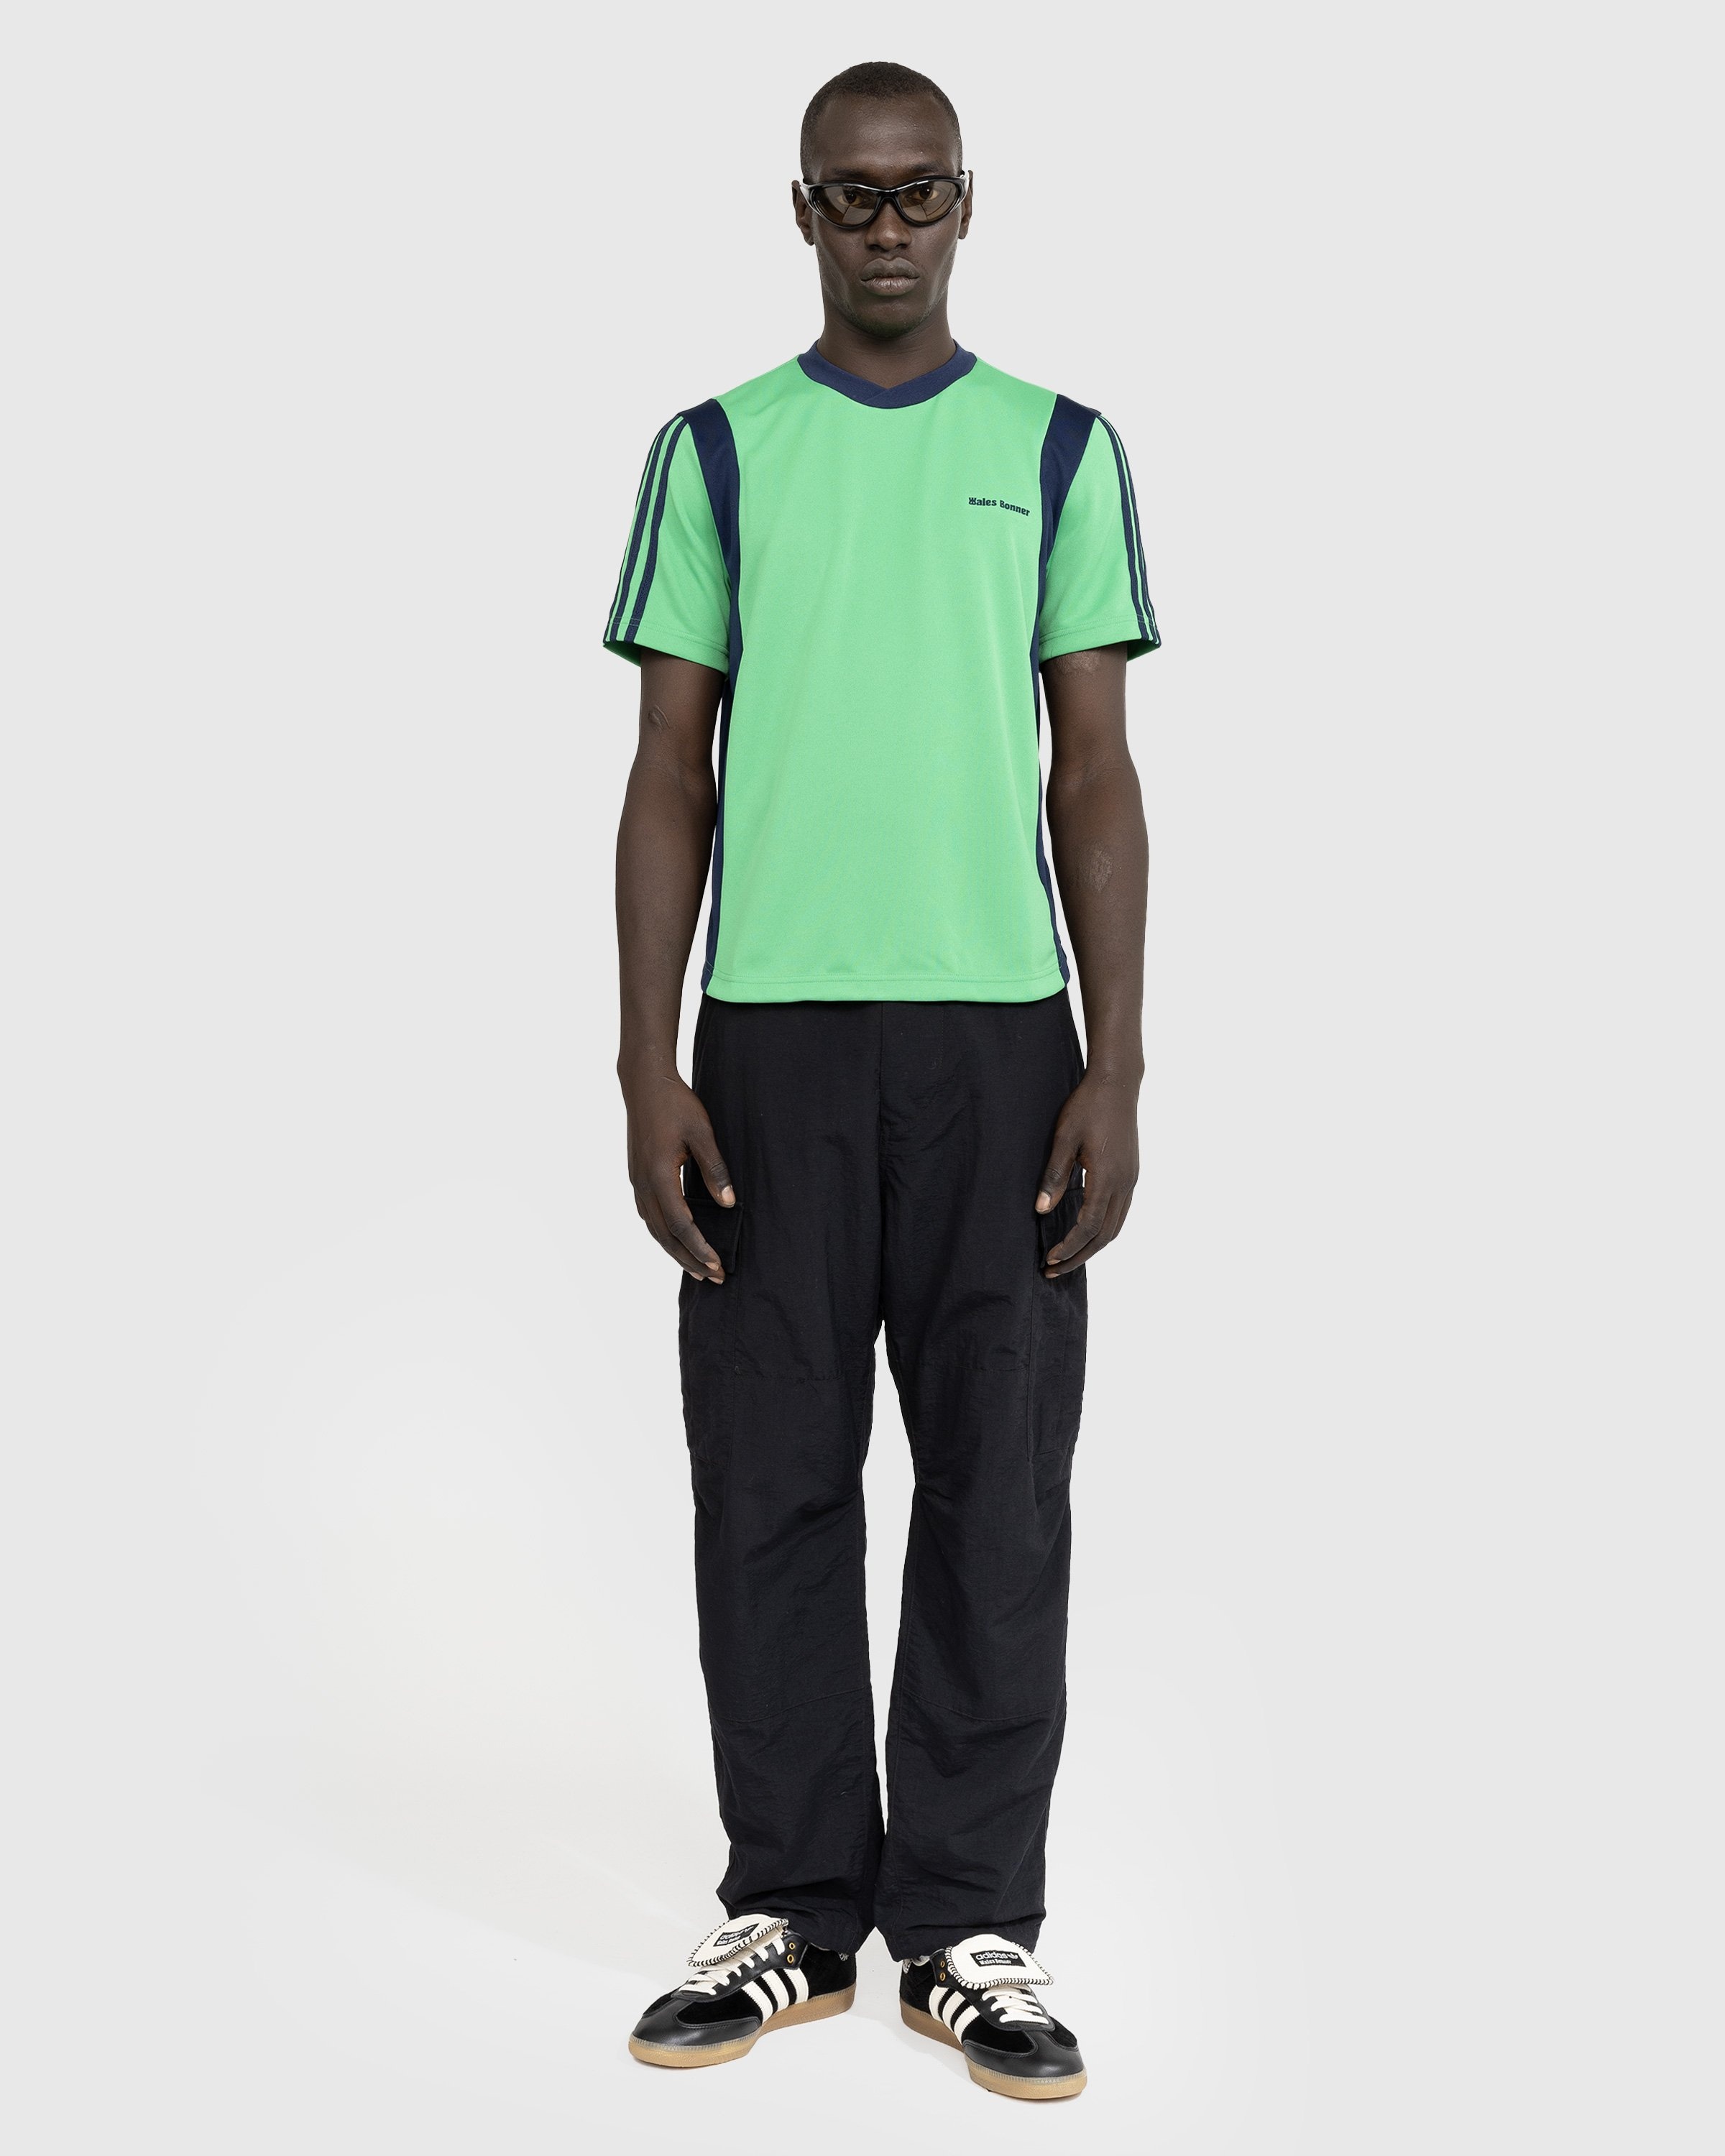 Adidas x Wales Bonner – Football Shirt Vivid Green - Longsleeves - Green - Image 2